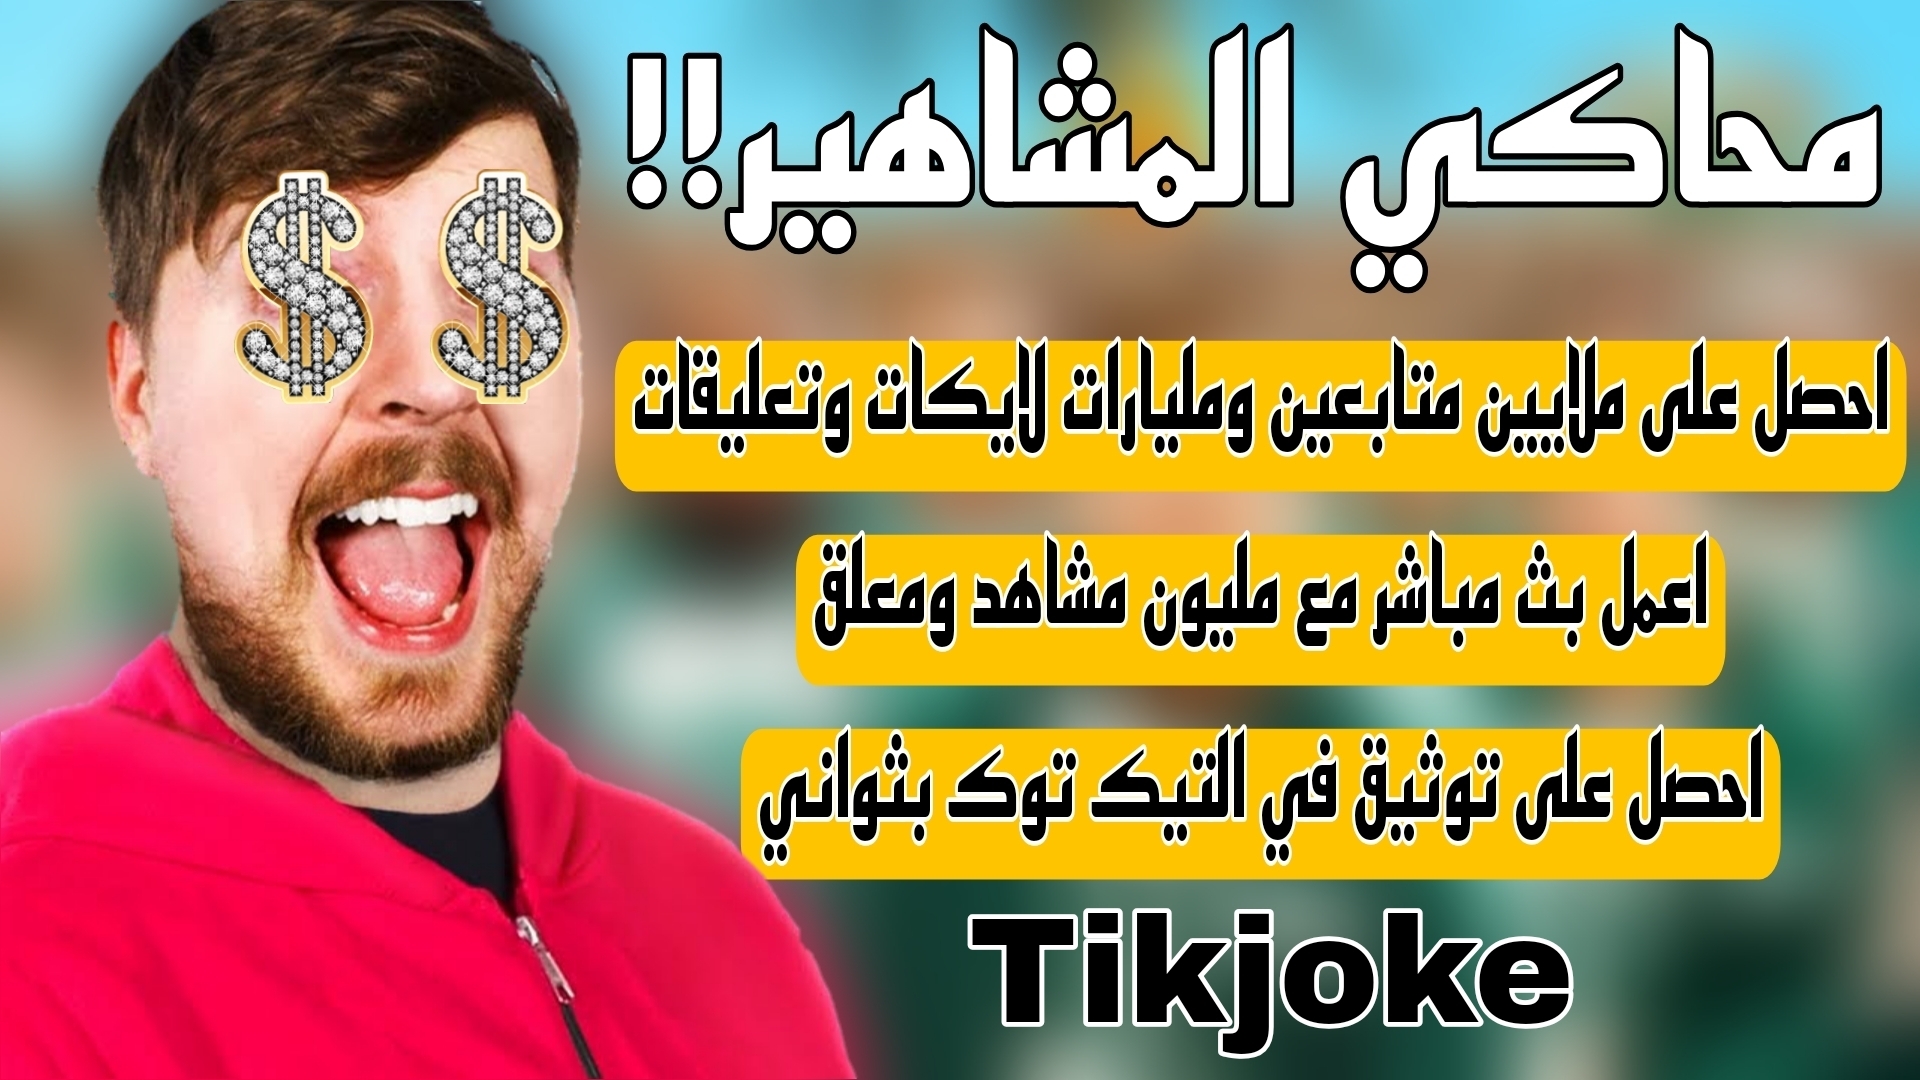 محاكي المشاهير: تحميل تطبيق Tikjoke للحصول على ملايين مشاهدات وتعليقات واكسبلور